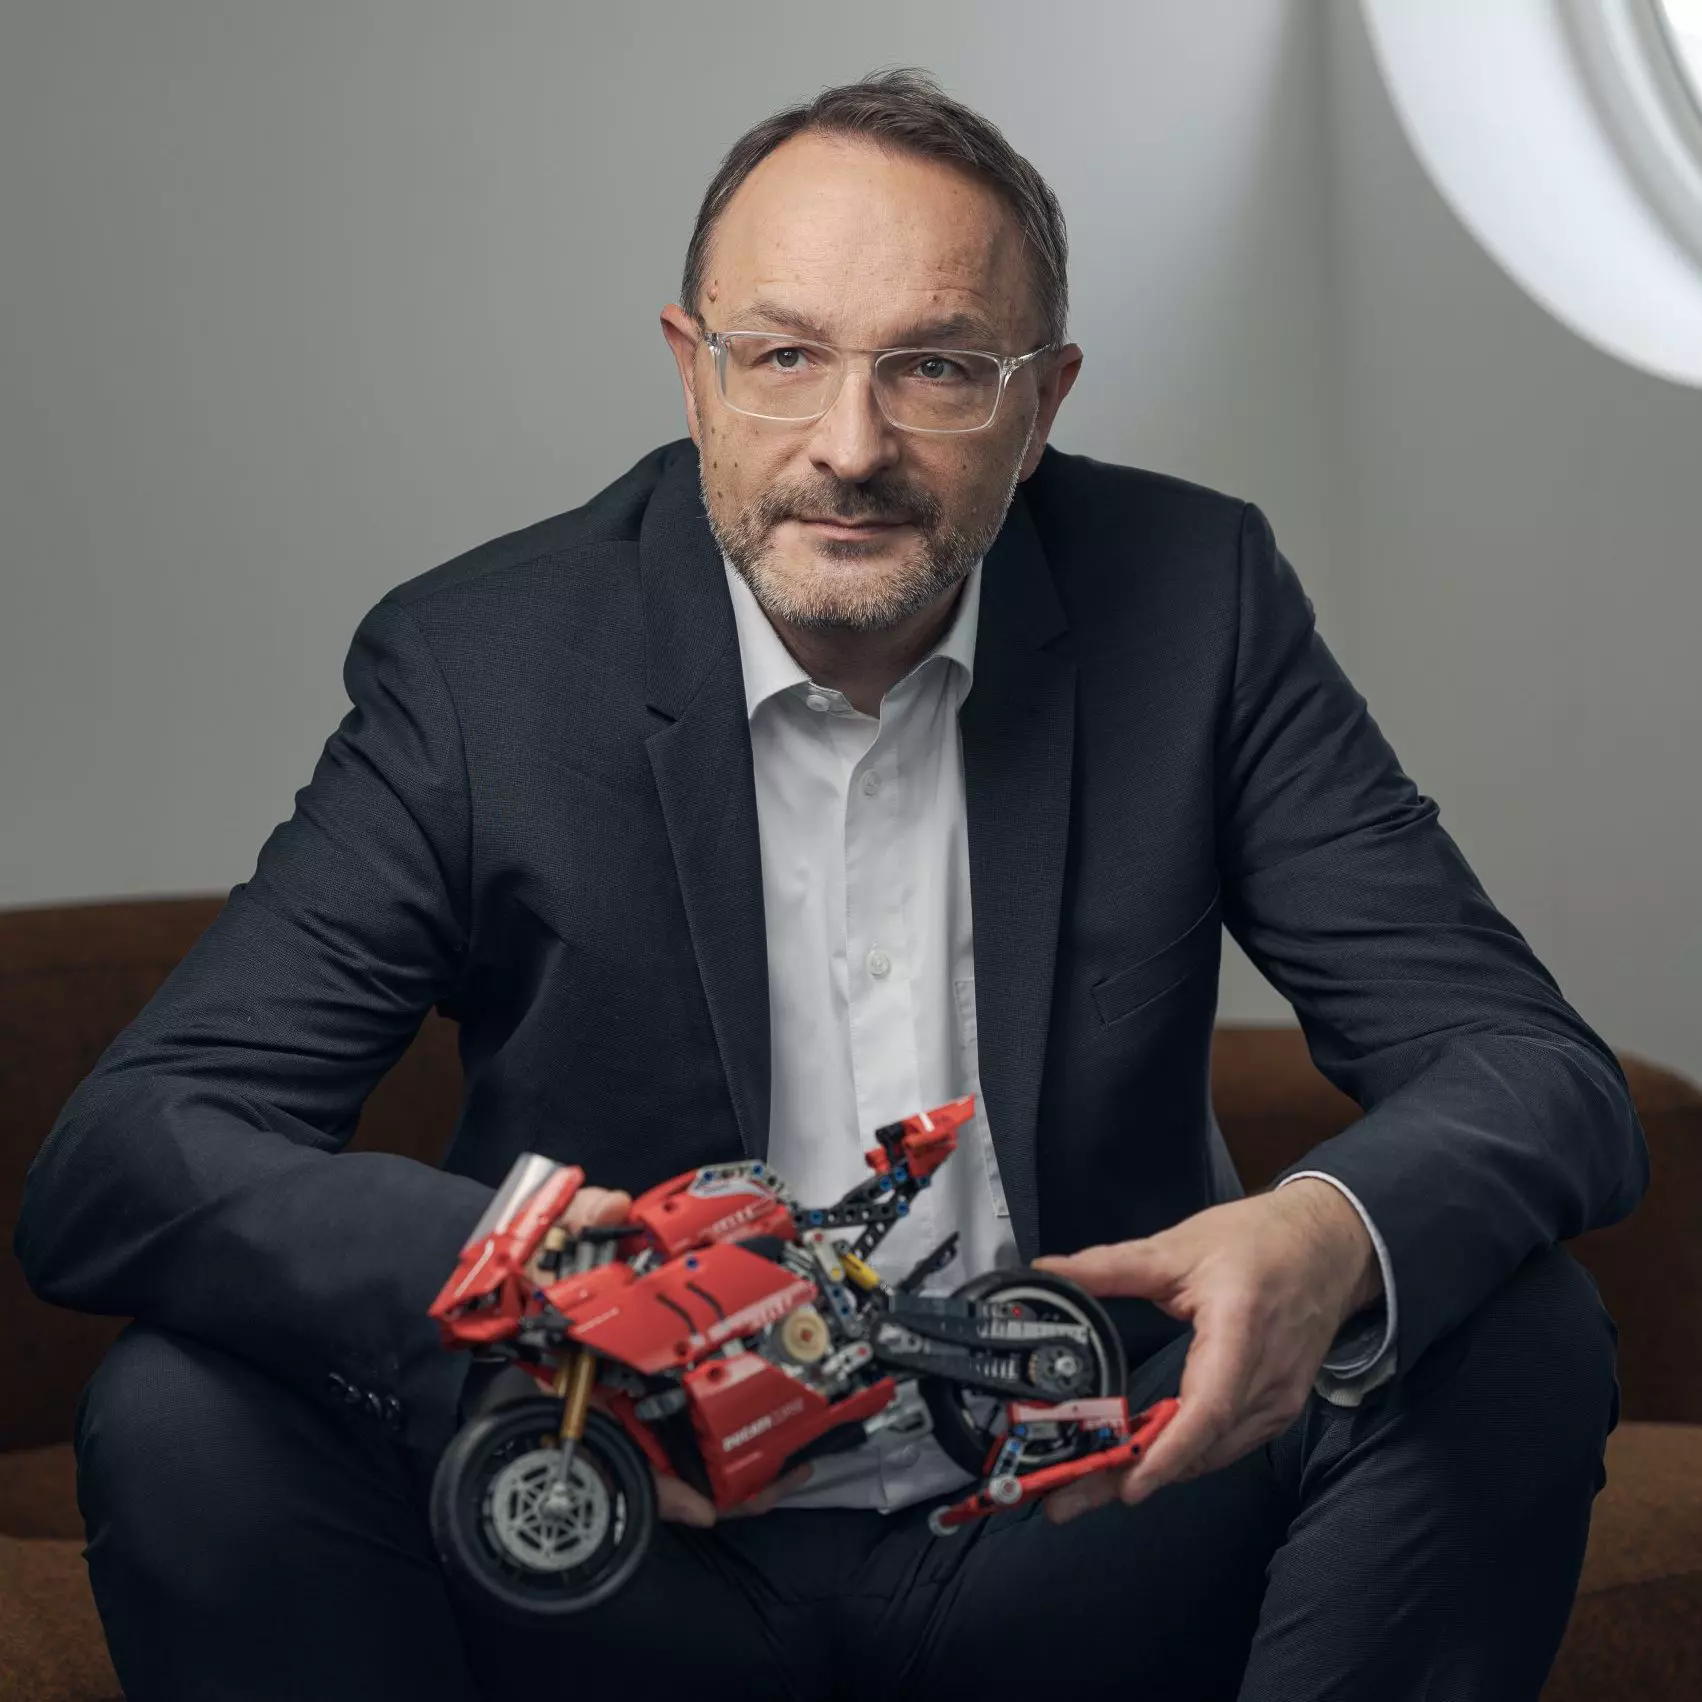 Michael Müller Jacquet in einem dunklen Anzug, er hält ein Modell eines roten Motorrads in den Händen.